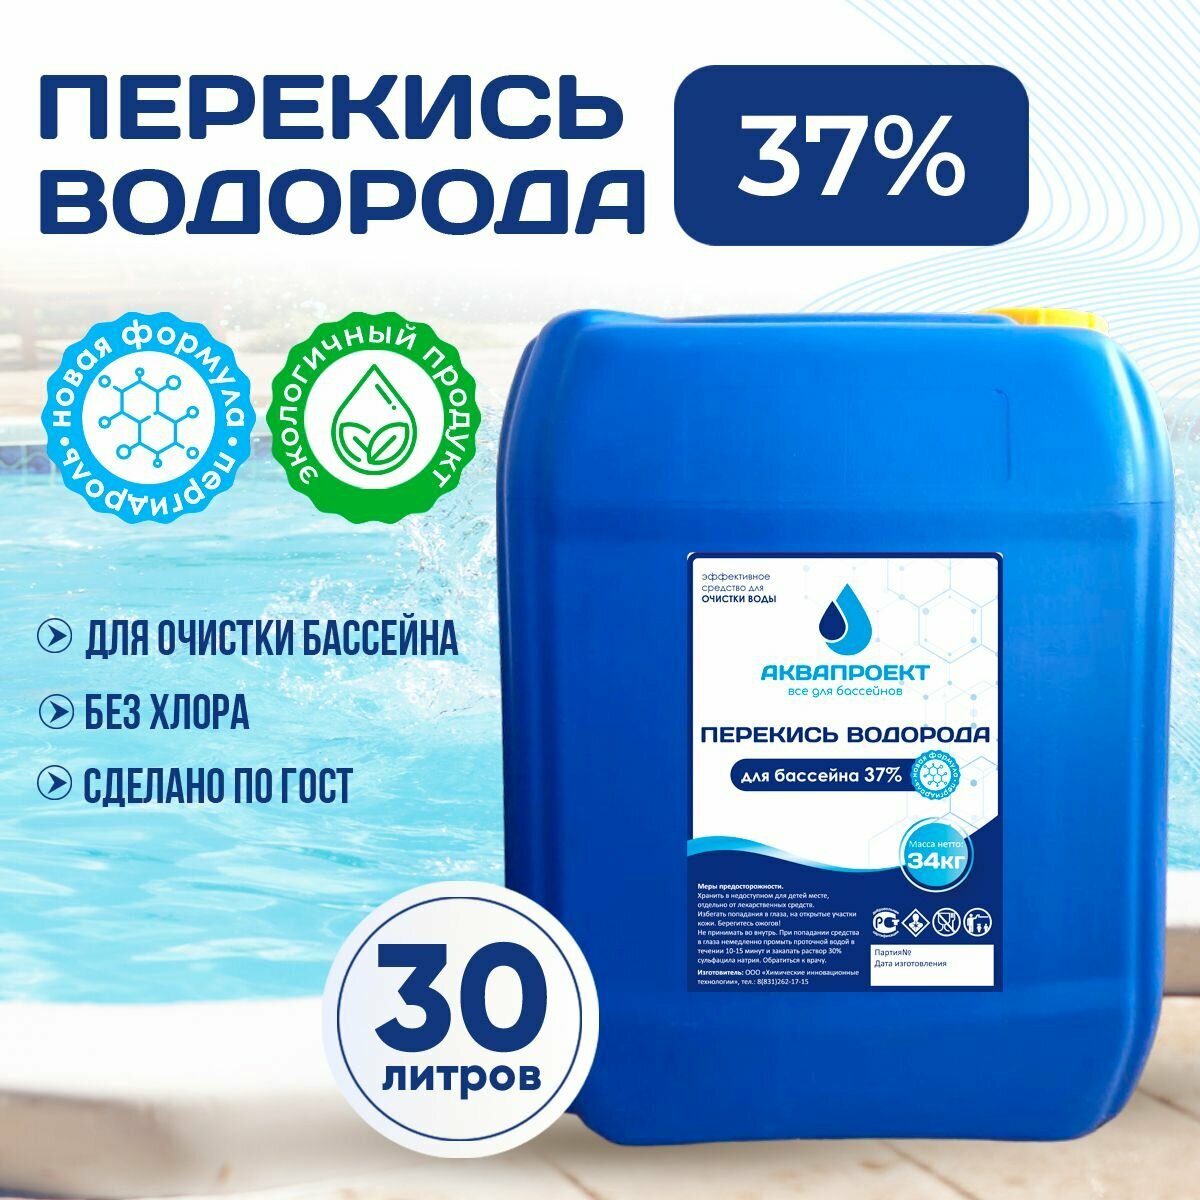 Перекись водорода для бассейна, канистра 30 литров / Пероксид 37% для очистки воды / Химия от цветения, водорослей и плесени